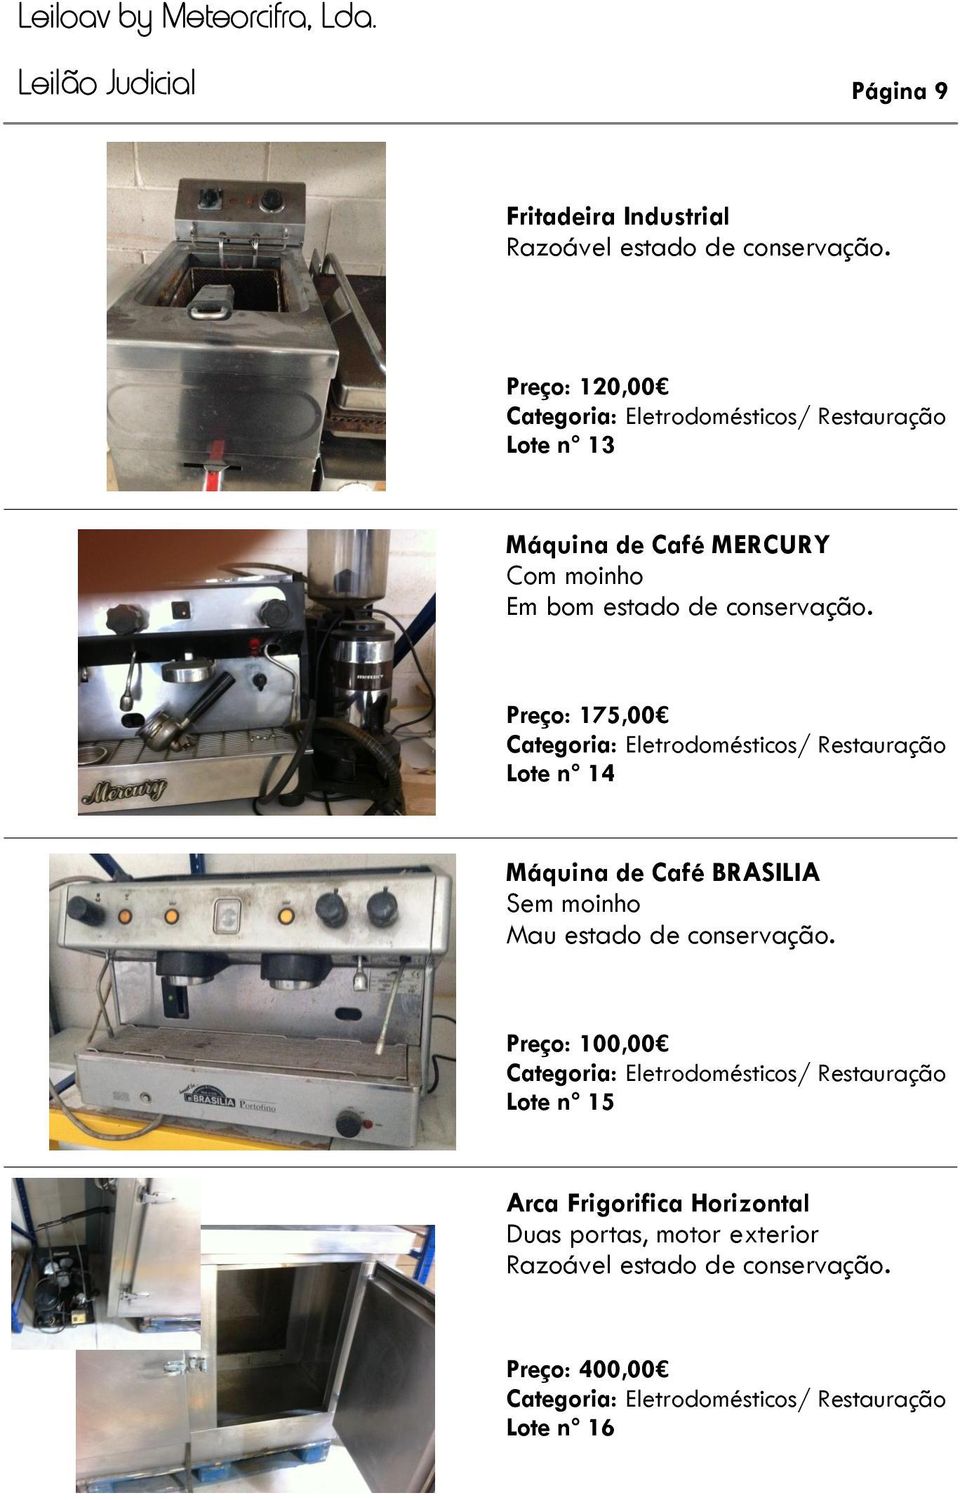 Máquina de Café BRASILIA Sem moinho Mau estado de conservação.